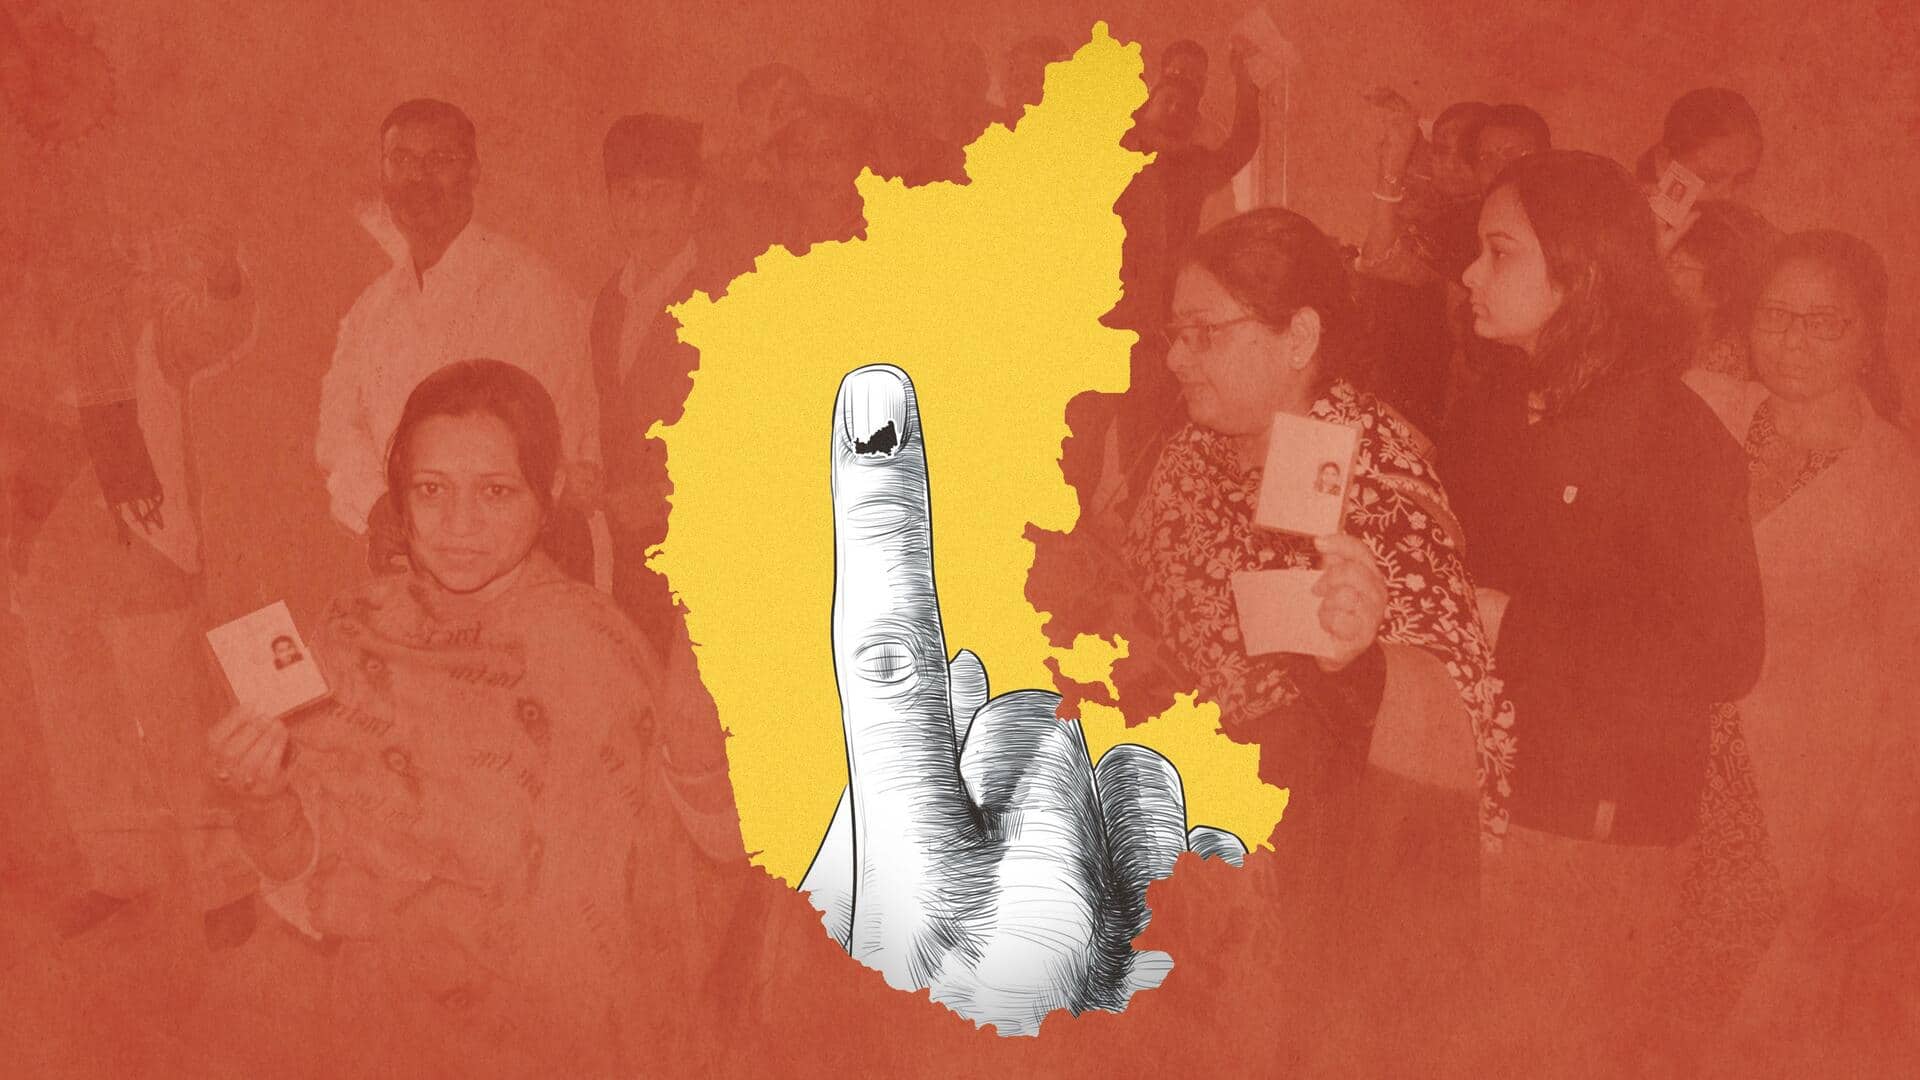 कर्नाटक विधानसभा चुनाव का मतदान जारी; 22 प्रतिशत उम्मीदवार दागी, जानिए अन्य महत्वपूर्ण आंकड़े